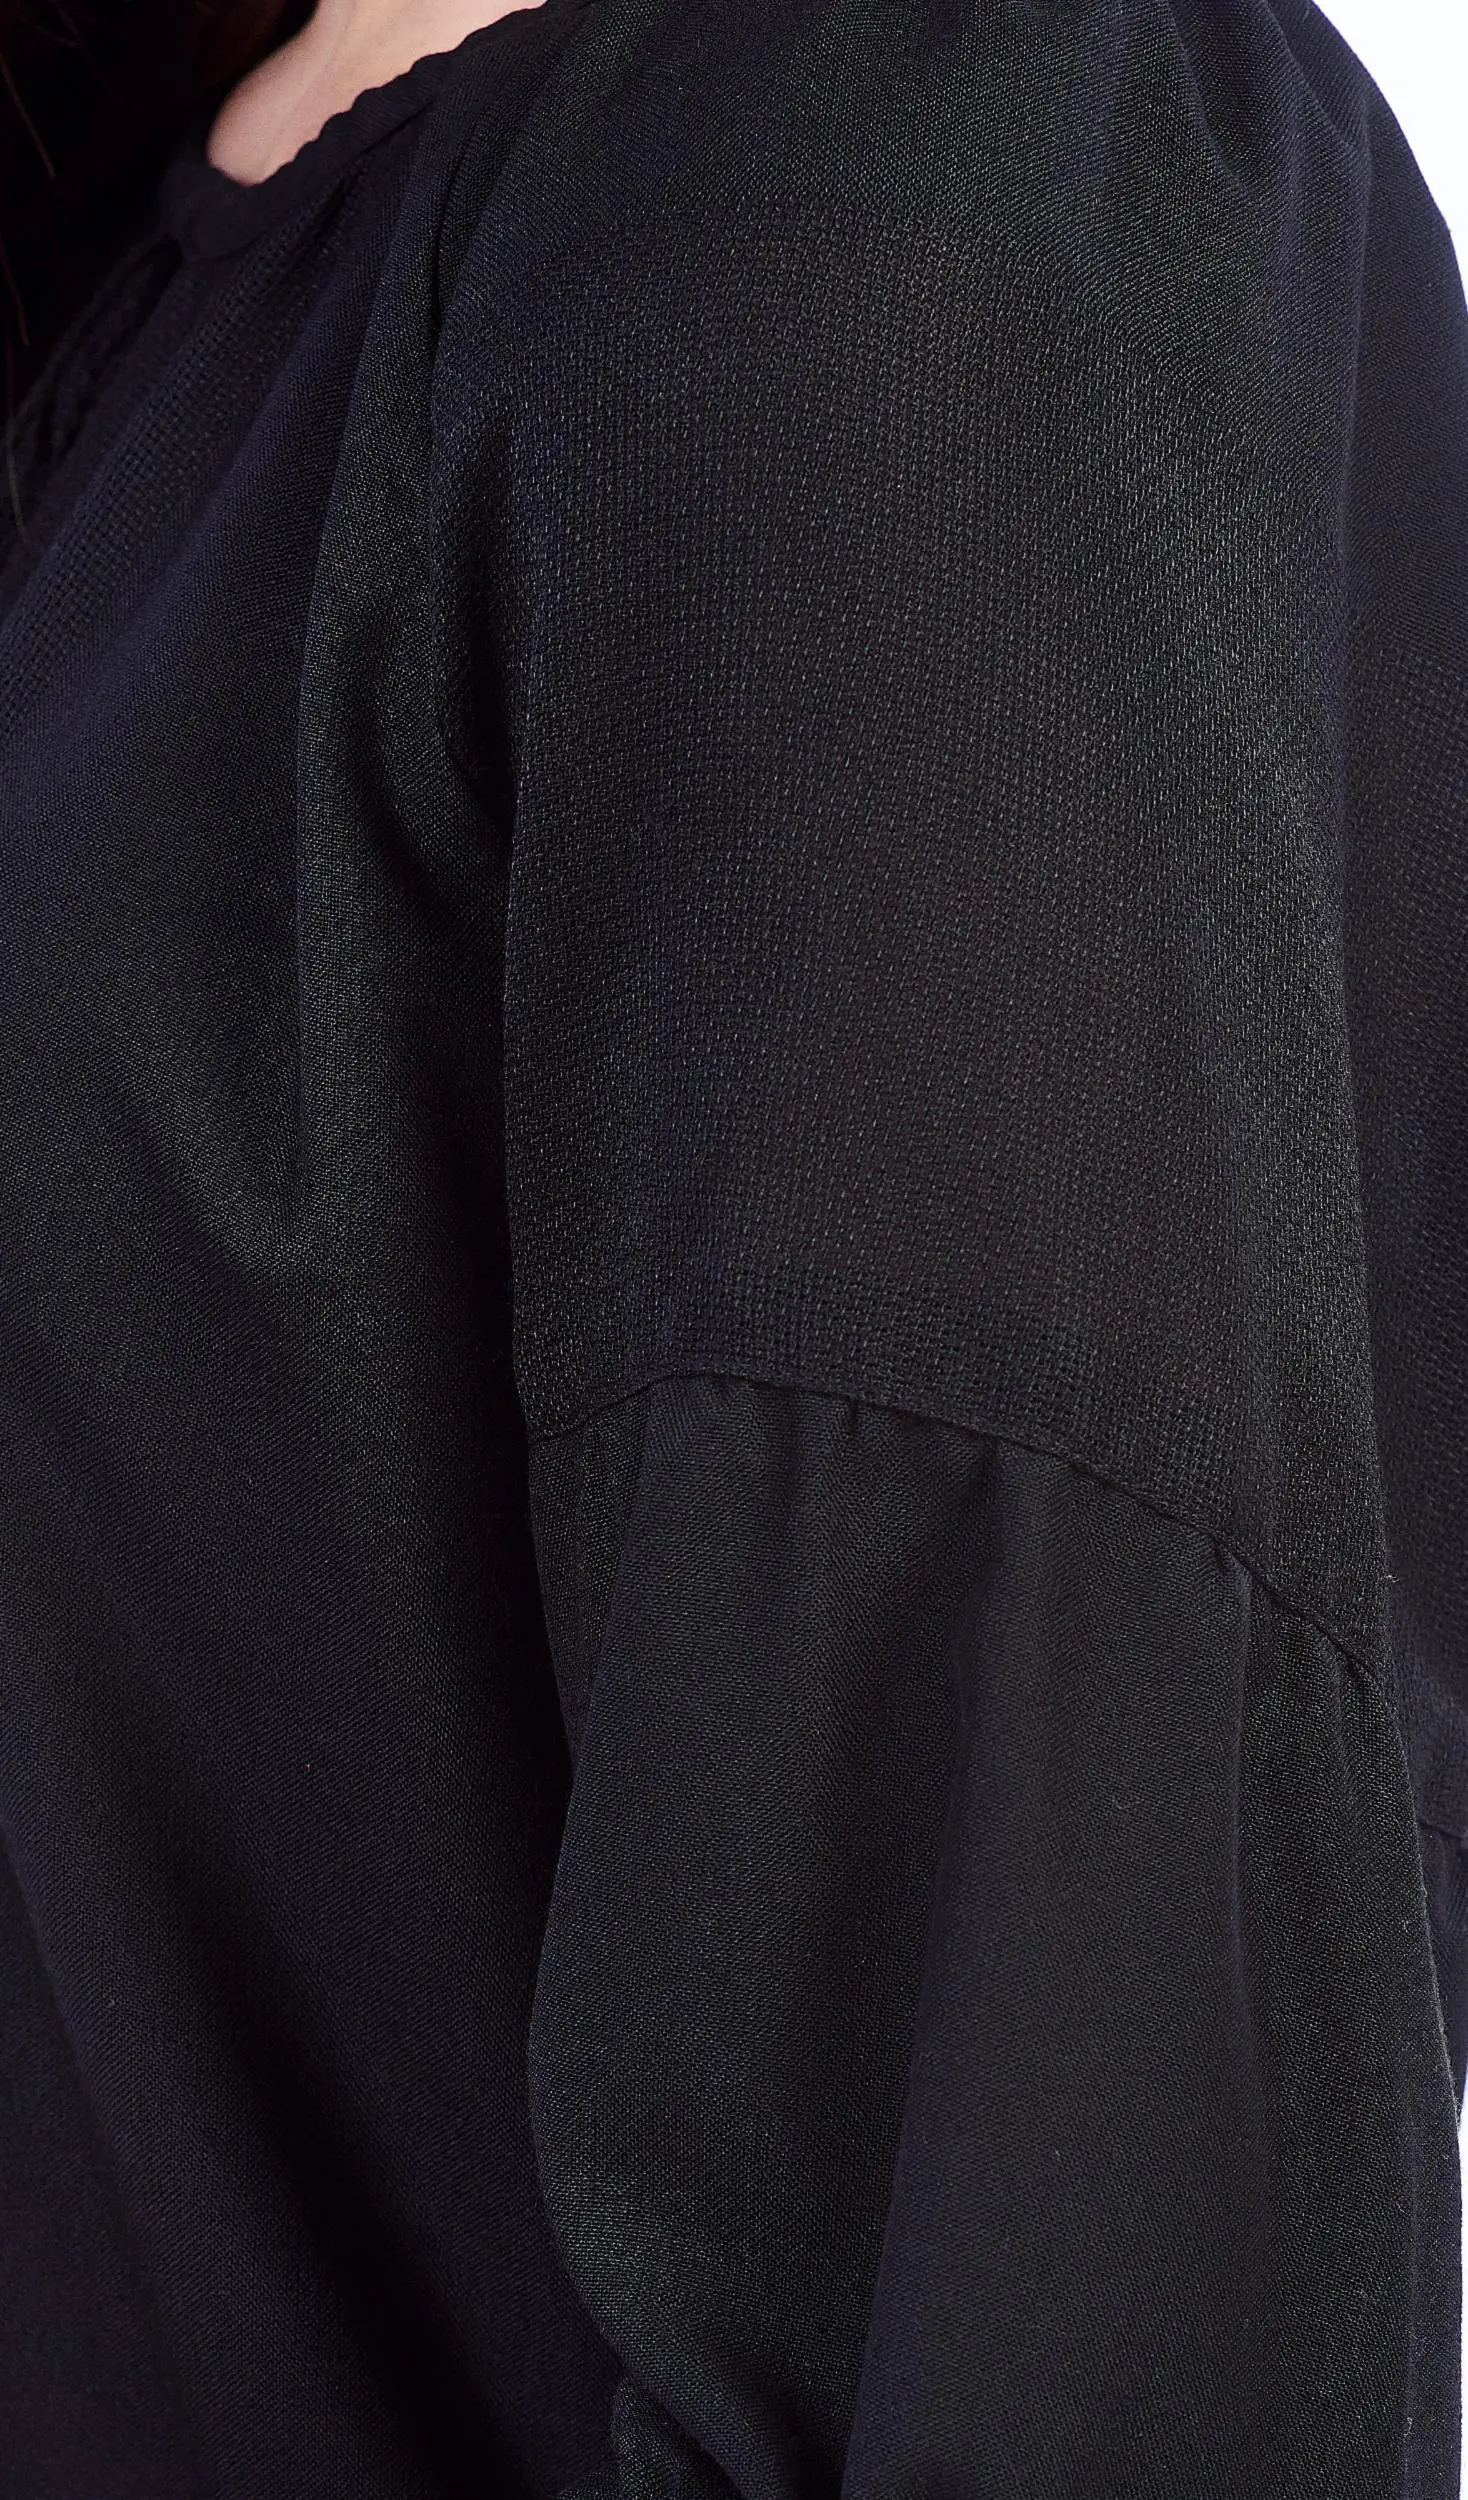 ТПК-172 03-02/09 Сорочка жіноча під вишивку, чорна, 3/4 рукав, розмір 52